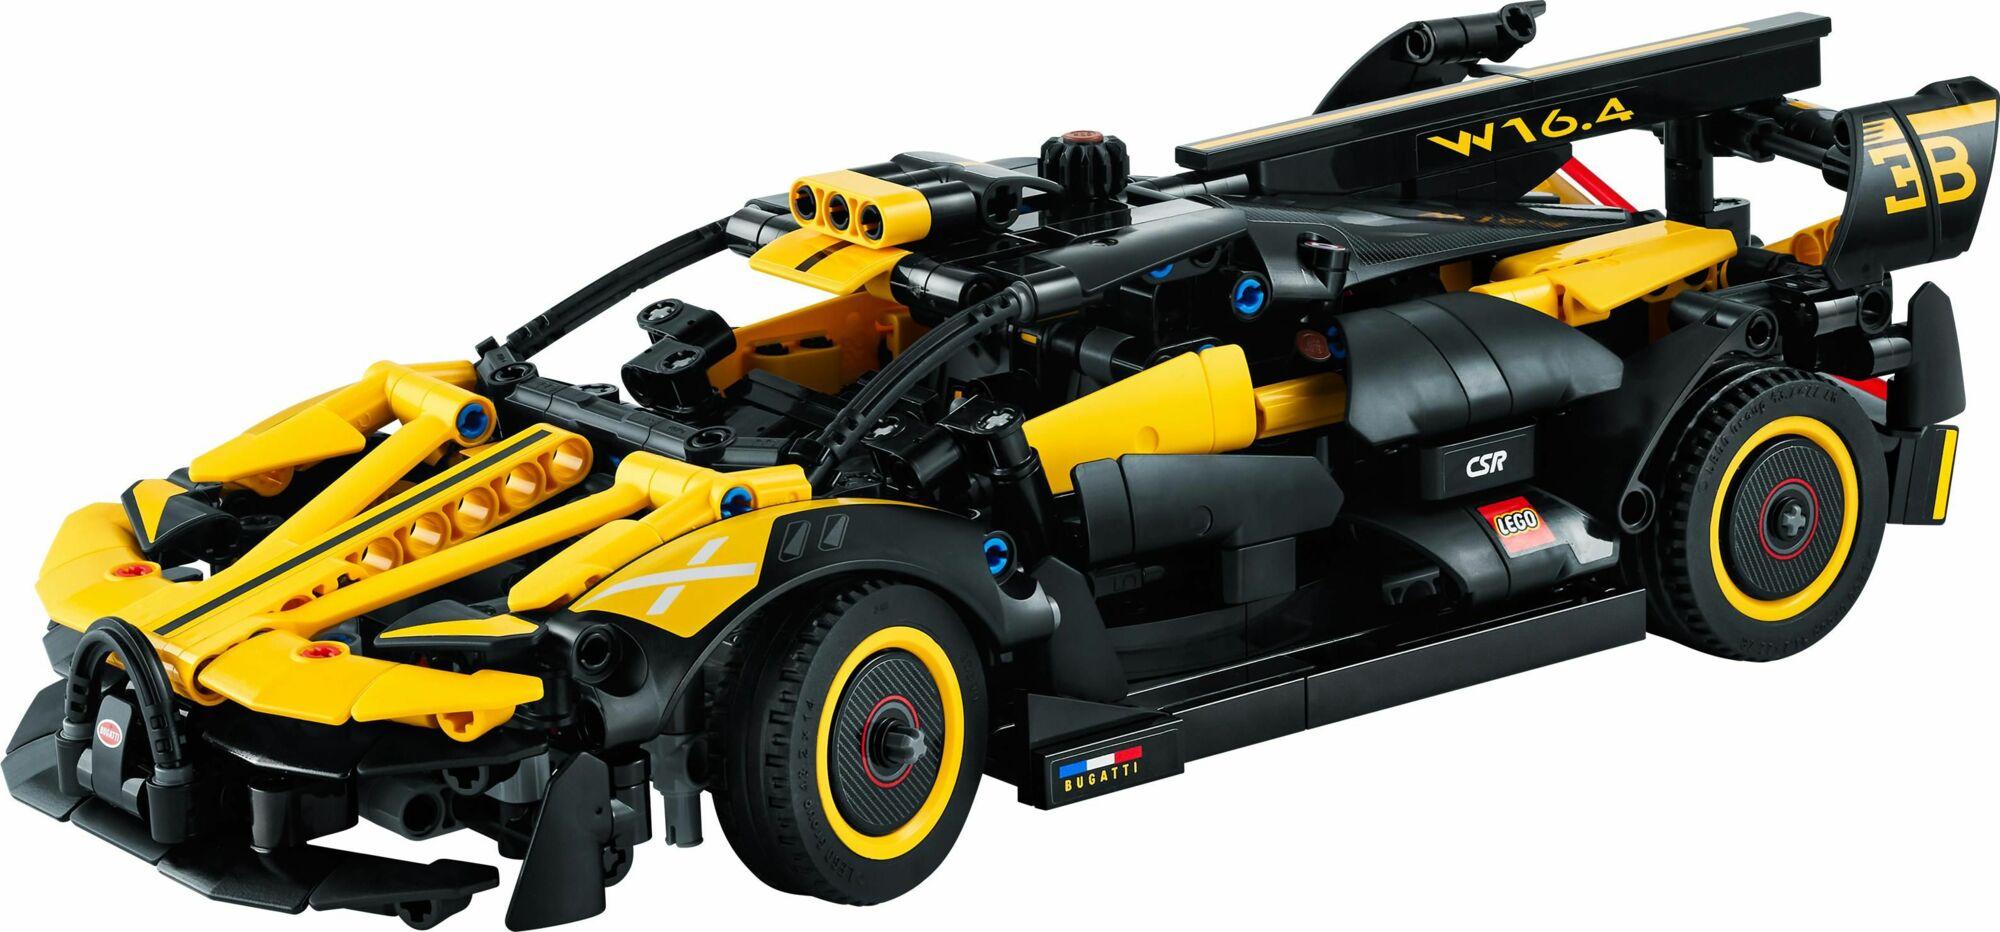 LEGO 42151 TECHNIC BUGATTI BOLIDE